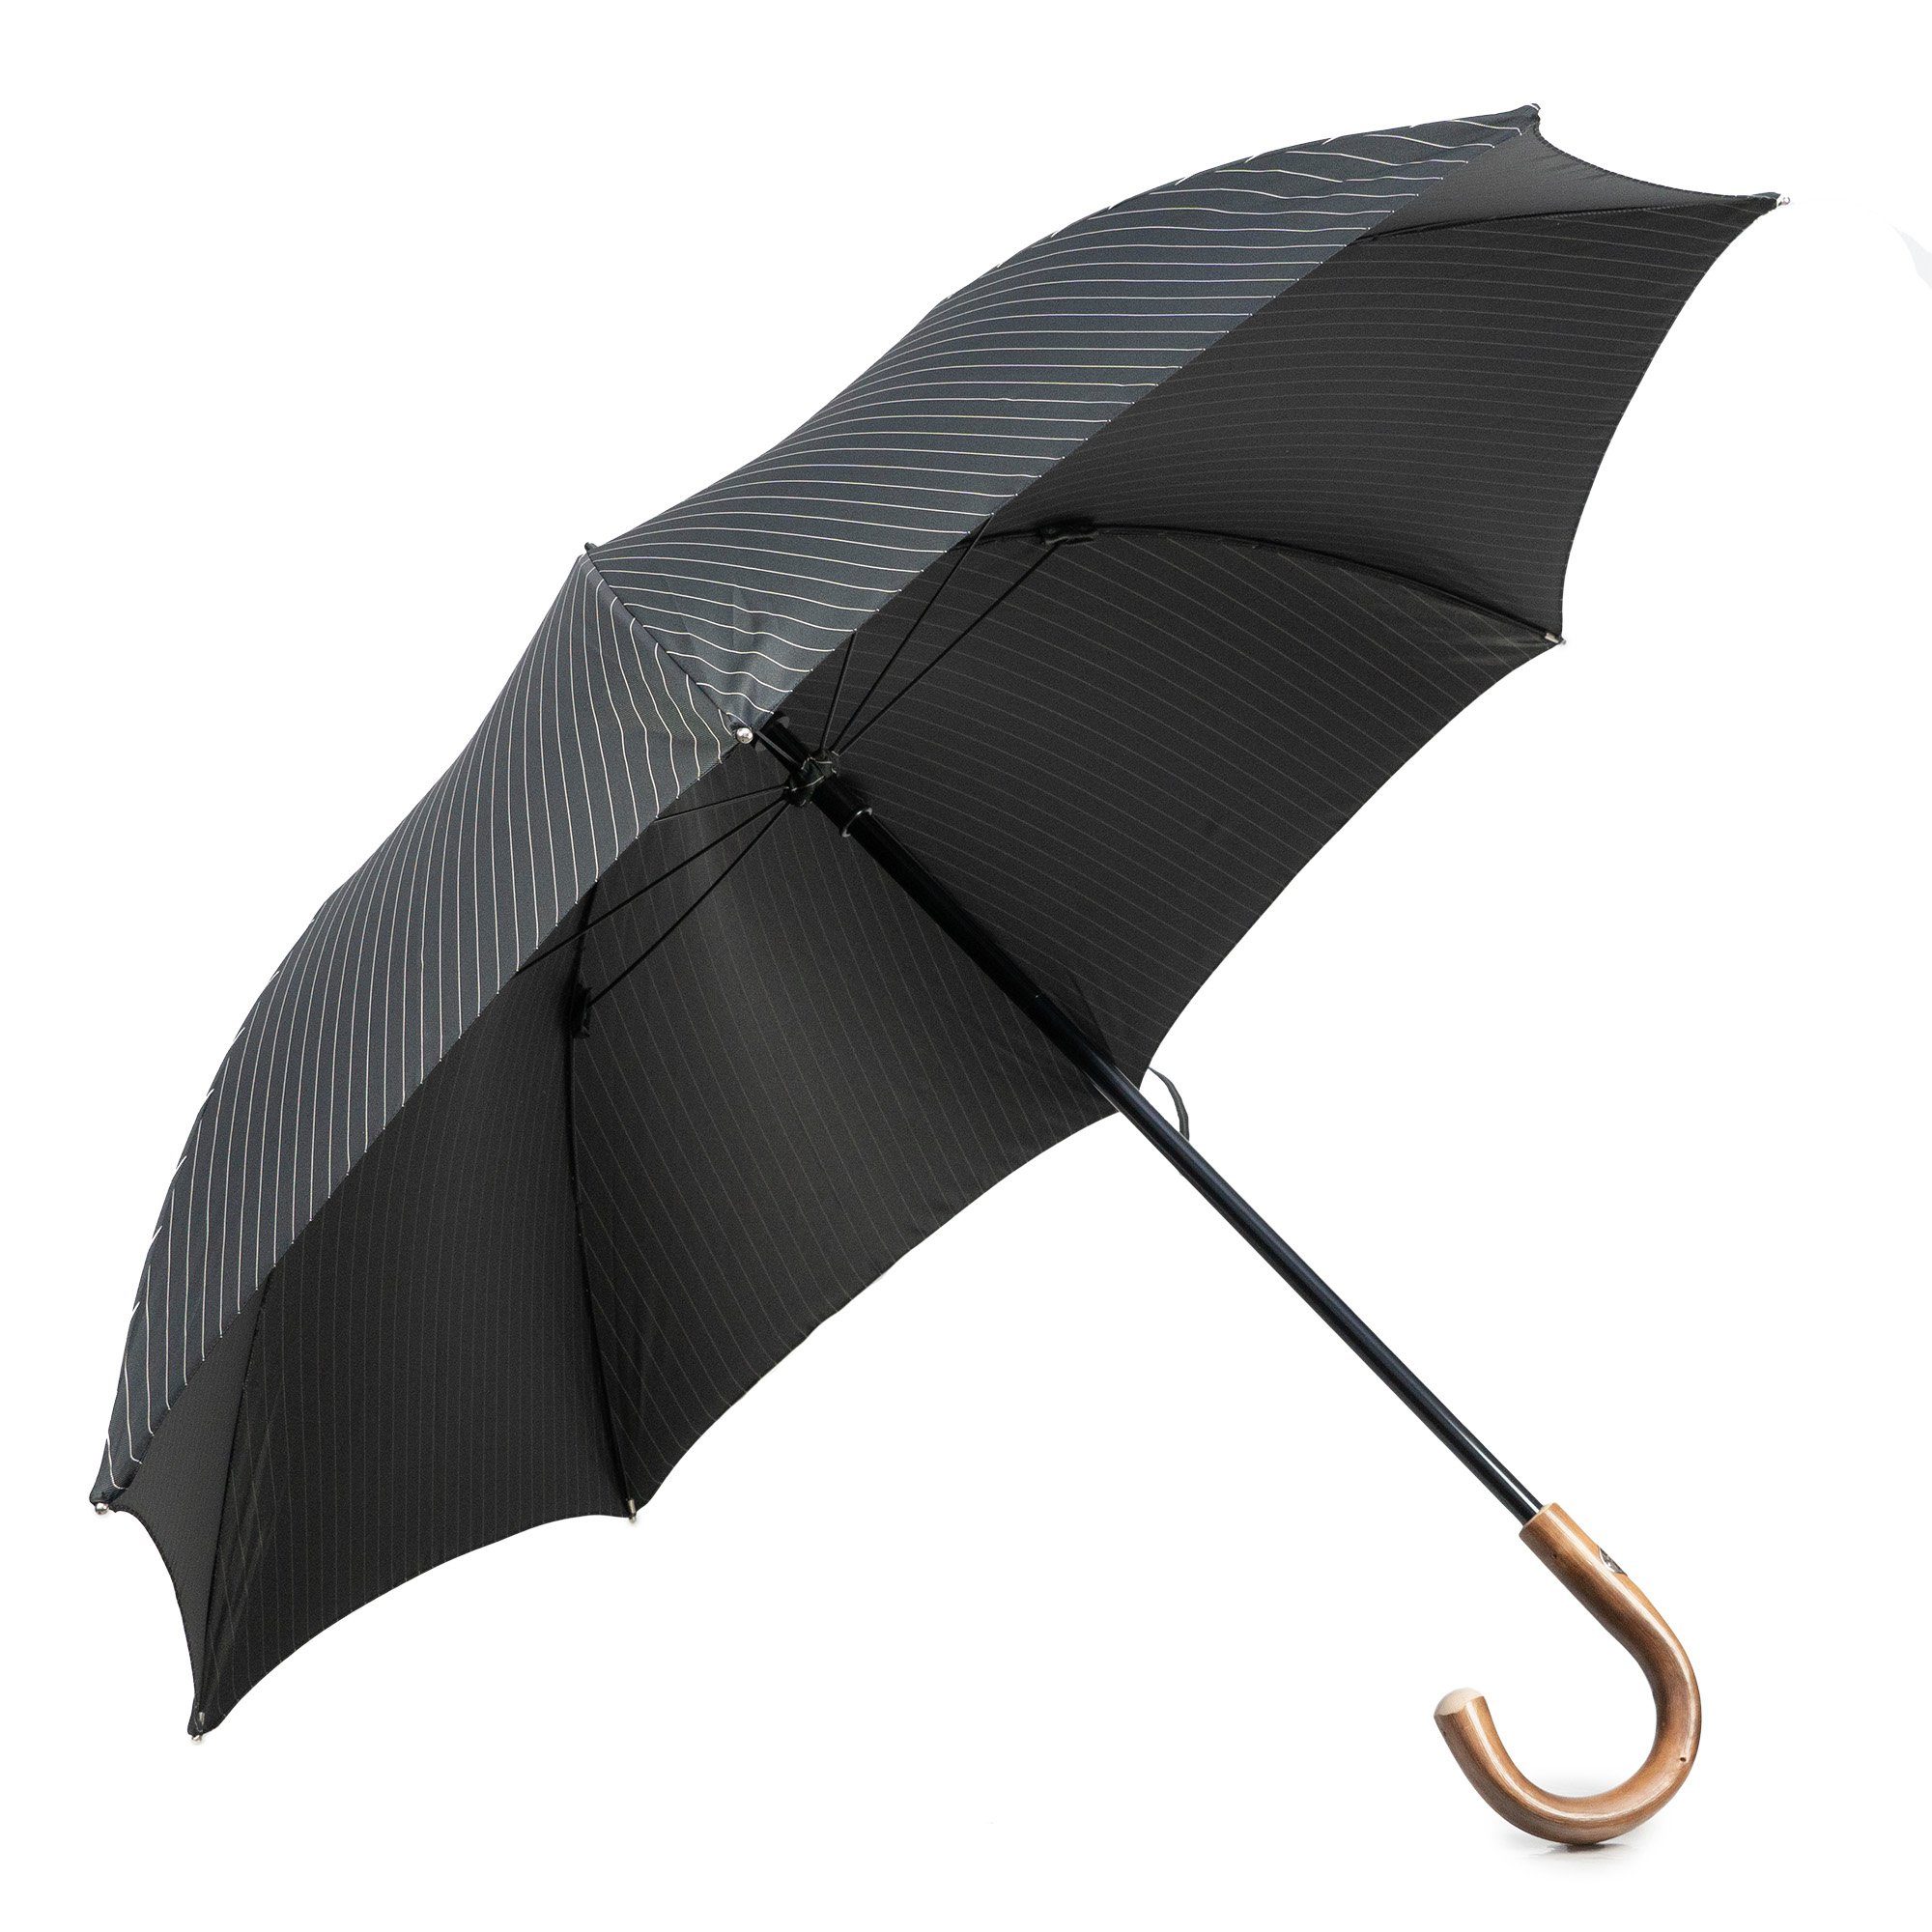 Italy Stockregenschirm, Francesco Handmade Luxus-Regenschirm, schwarz-gestreift, in Maglia